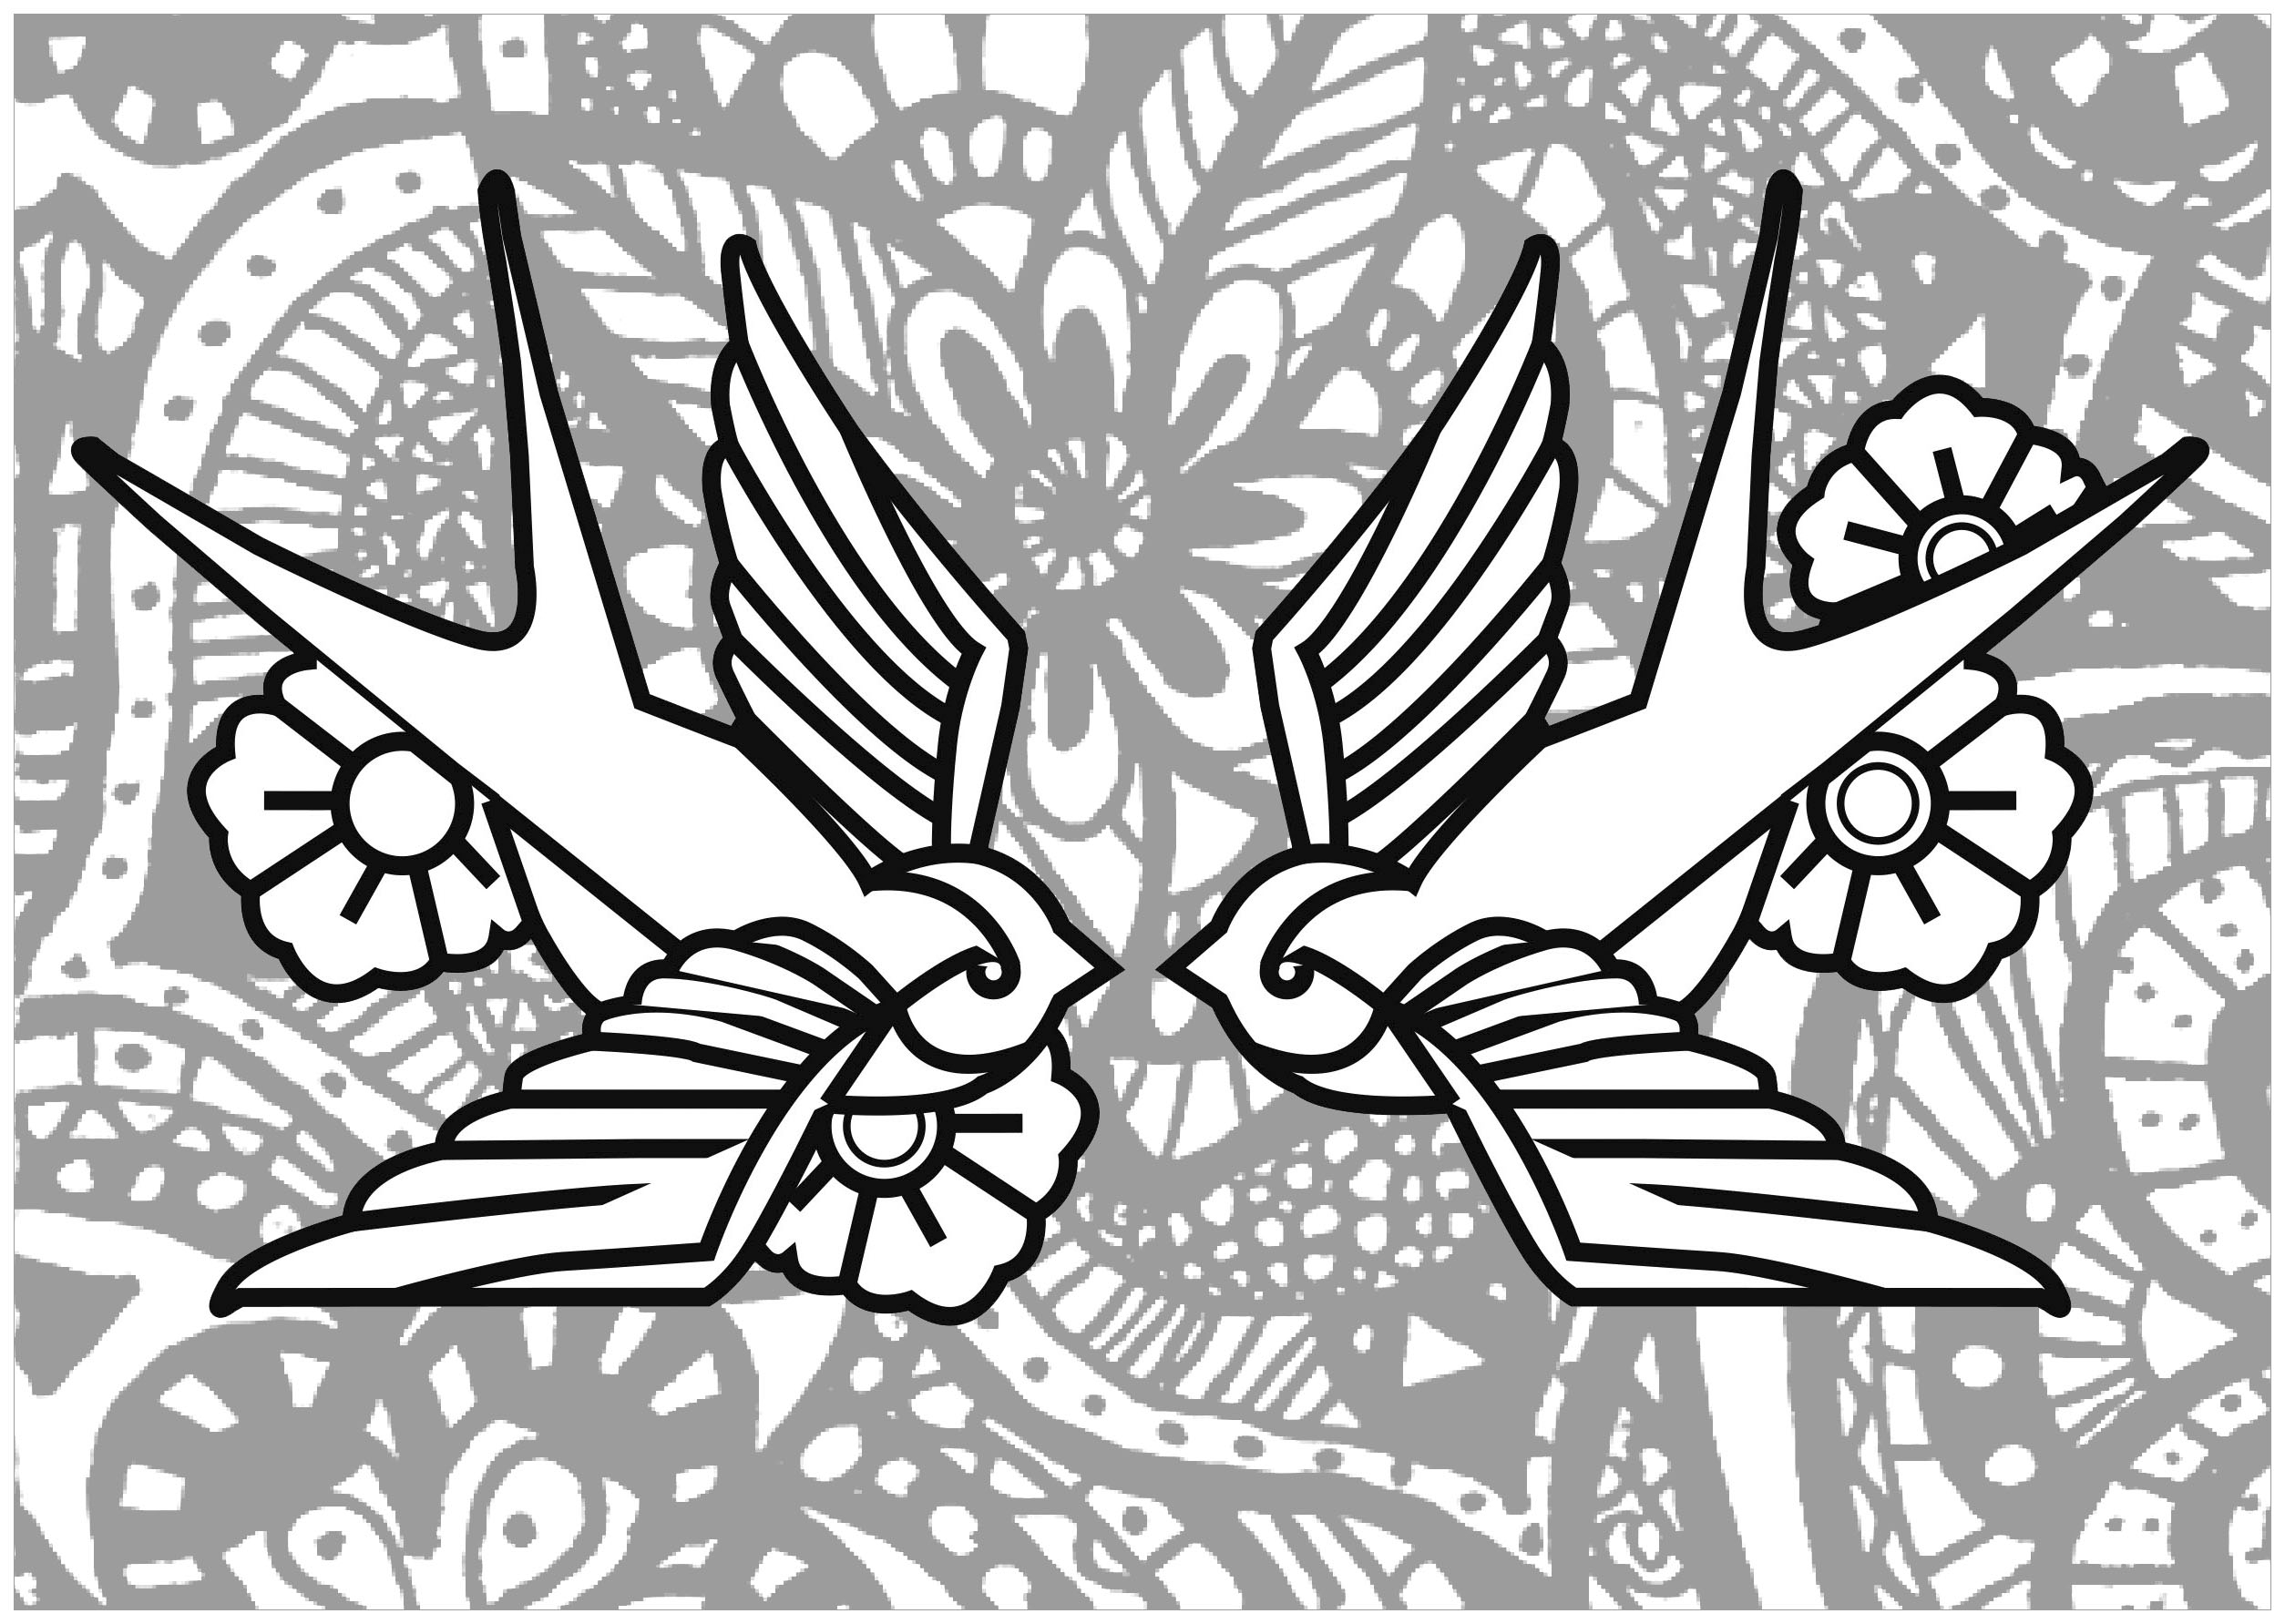 Deux Hirondelles - Coloriage D&amp;#039;Oiseaux - Coloriages Pour pour Coloriage D Hirondelle 